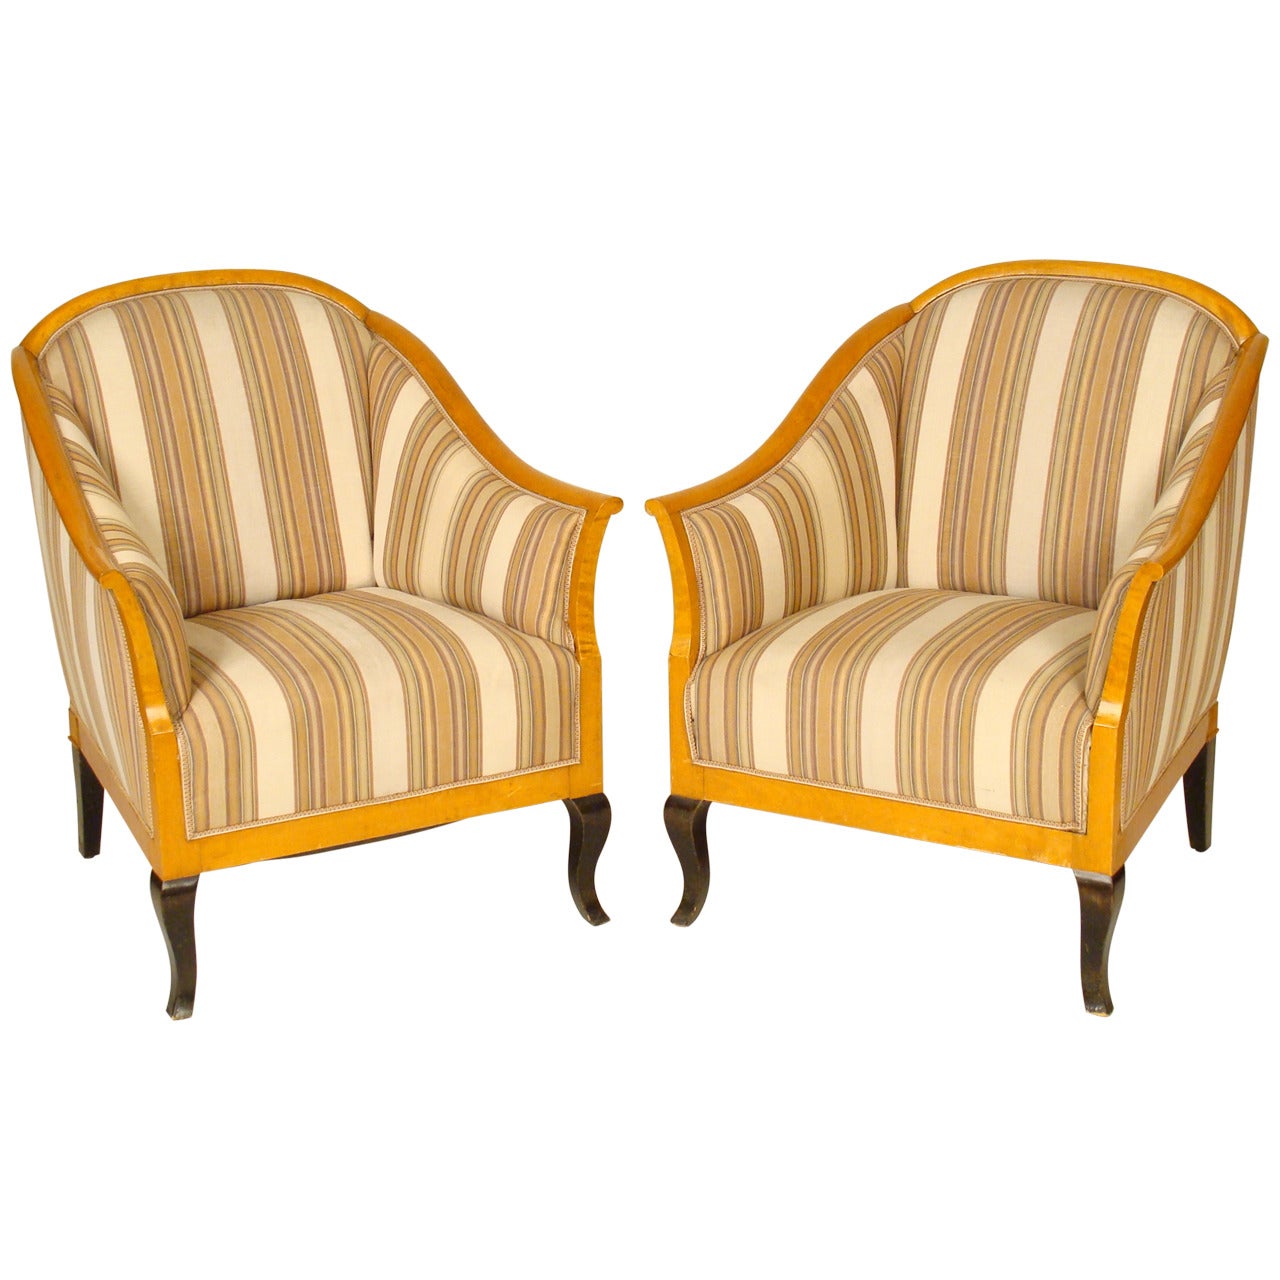 Pair of Biedermeier Revival Club Chairs